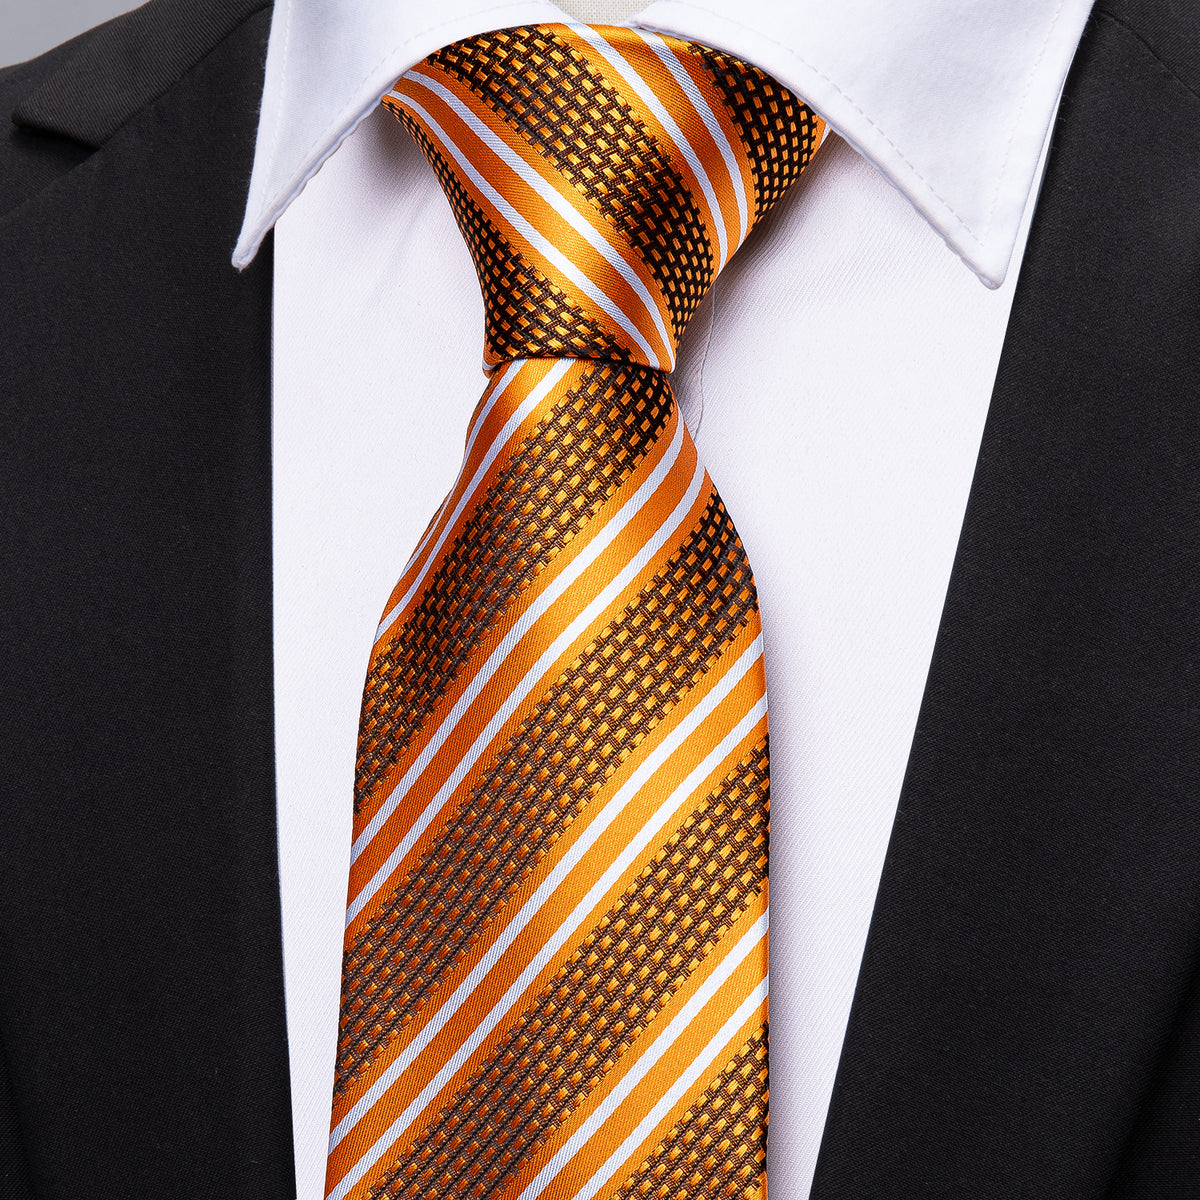 Men’s Silk Coordinated Tie Set - Orange Black Striped (5312)